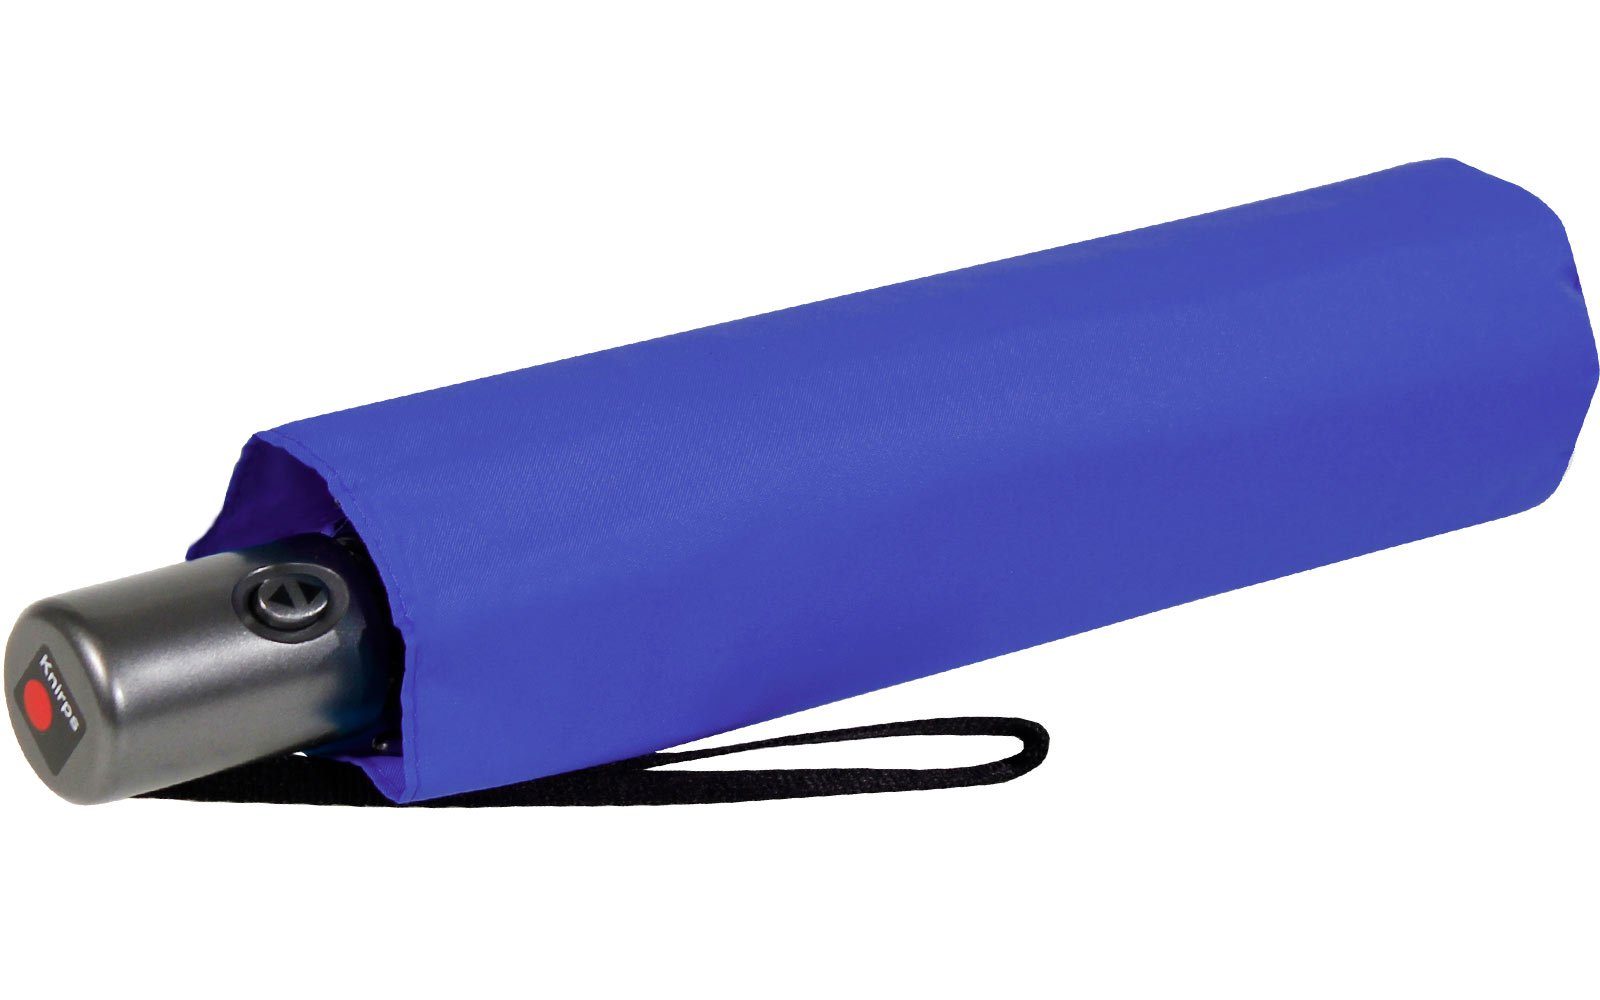 Taschenregenschirm Duomatic Auf-Zu dabei, passt immer in royalblau Slim Automatik, und jede mit Tasche Knirps® leicht klein